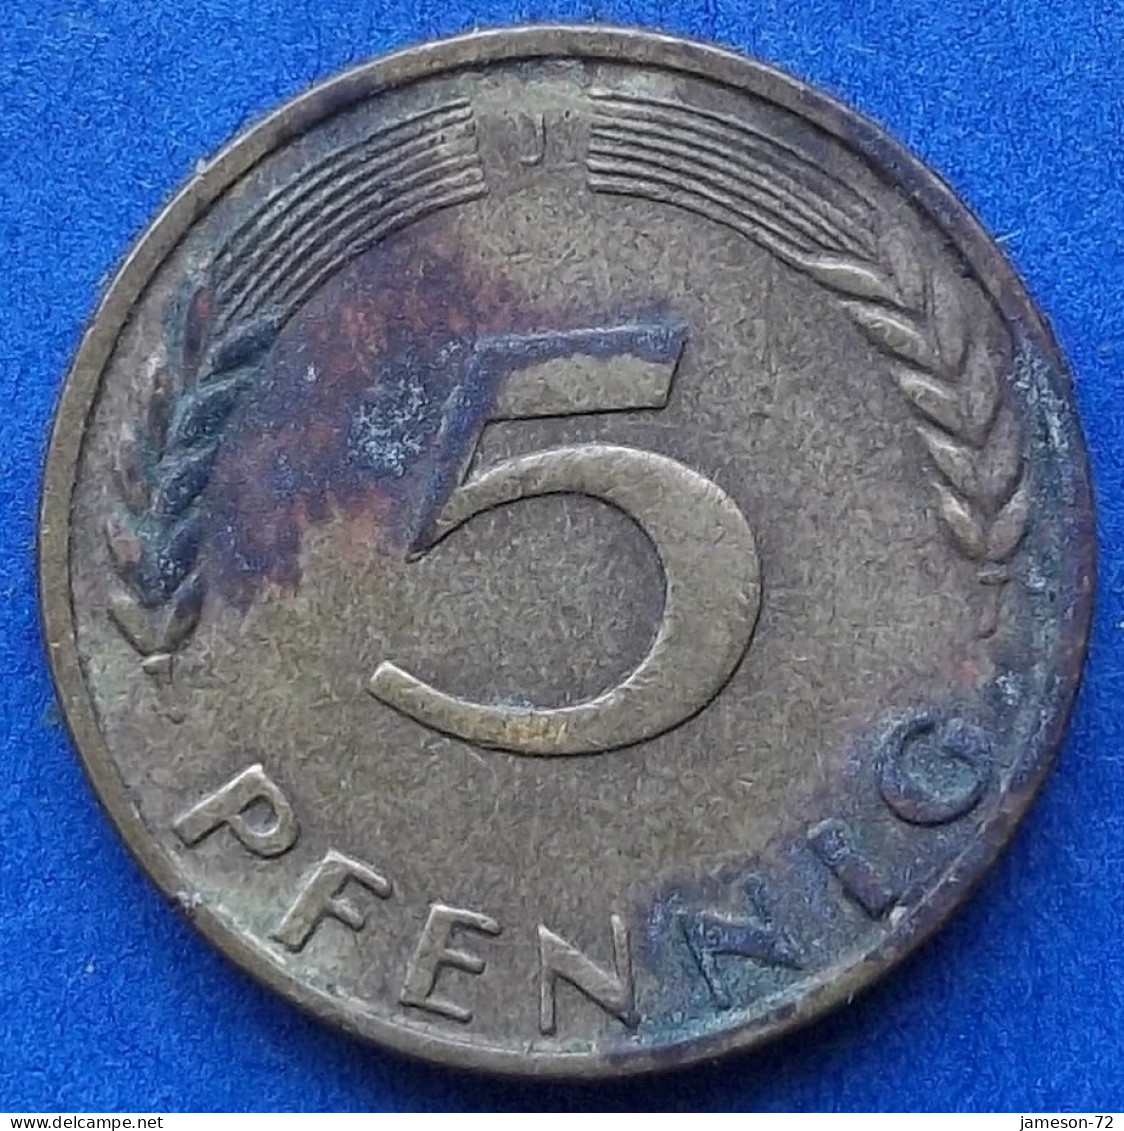 GERMANY - 5 Pfennig 1950 J KM# 107 Federal Republic Mark Coinage (1946-2002) - Edelweiss Coins - 5 Pfennig